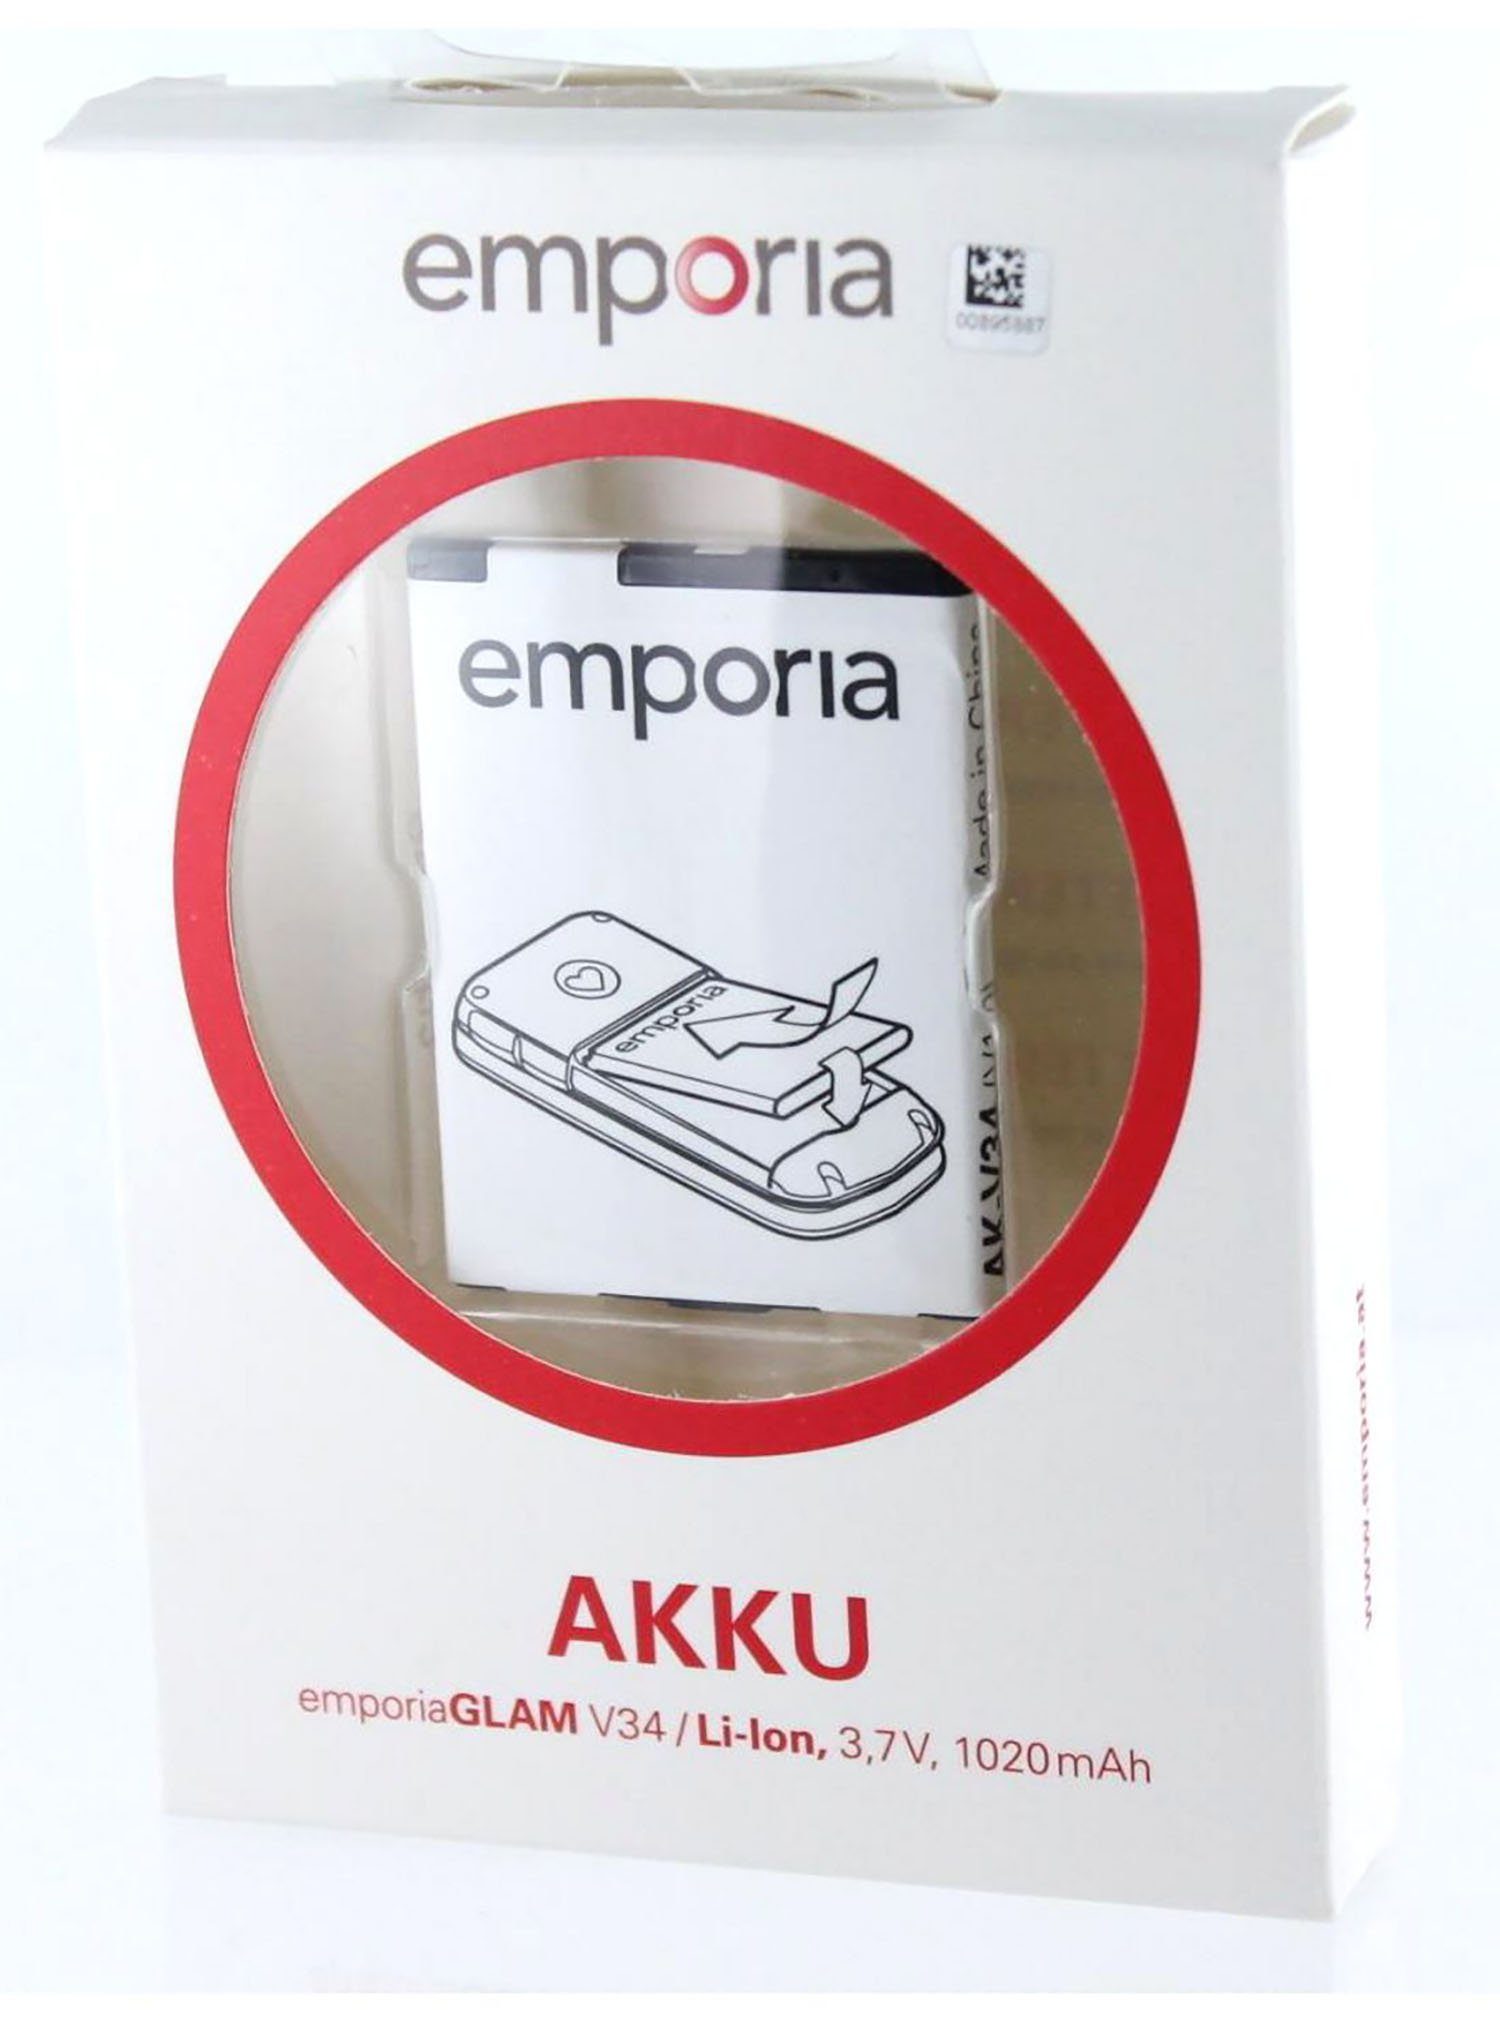 Akkupacks Emporia Akku Original V34 für Emporia 1020 mAh Akku